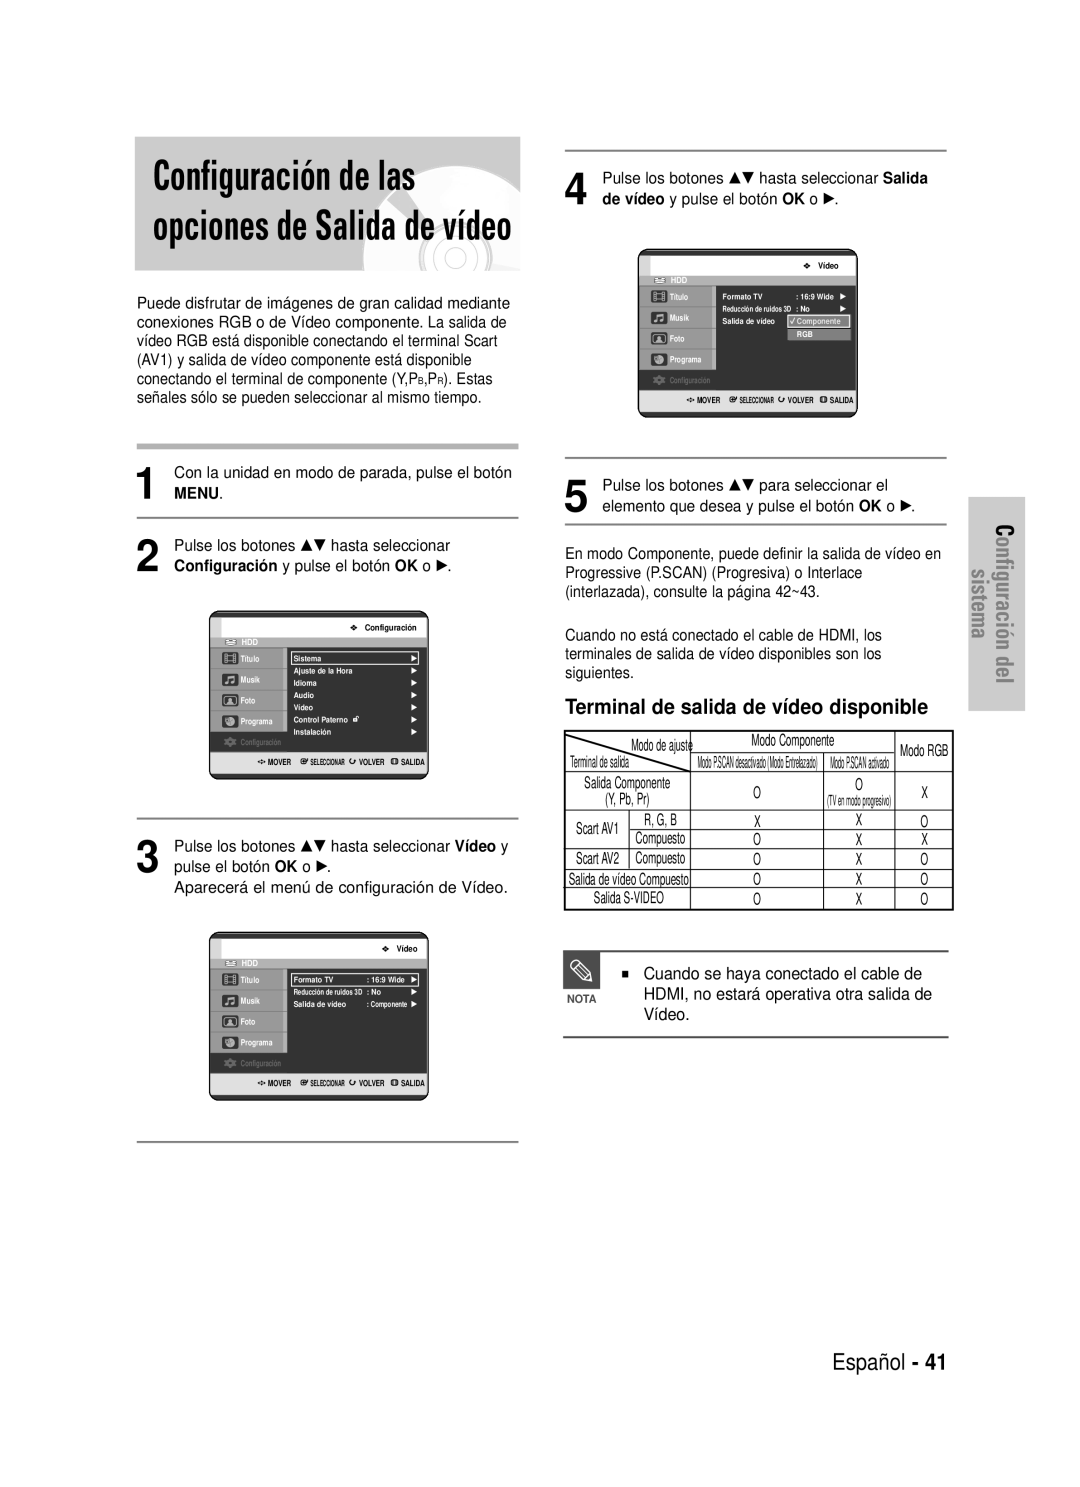 Samsung DVD-HR725/XEO Configuración de las opciones de Salida de vídeo, Terminal de salida de vídeo disponible, Español 